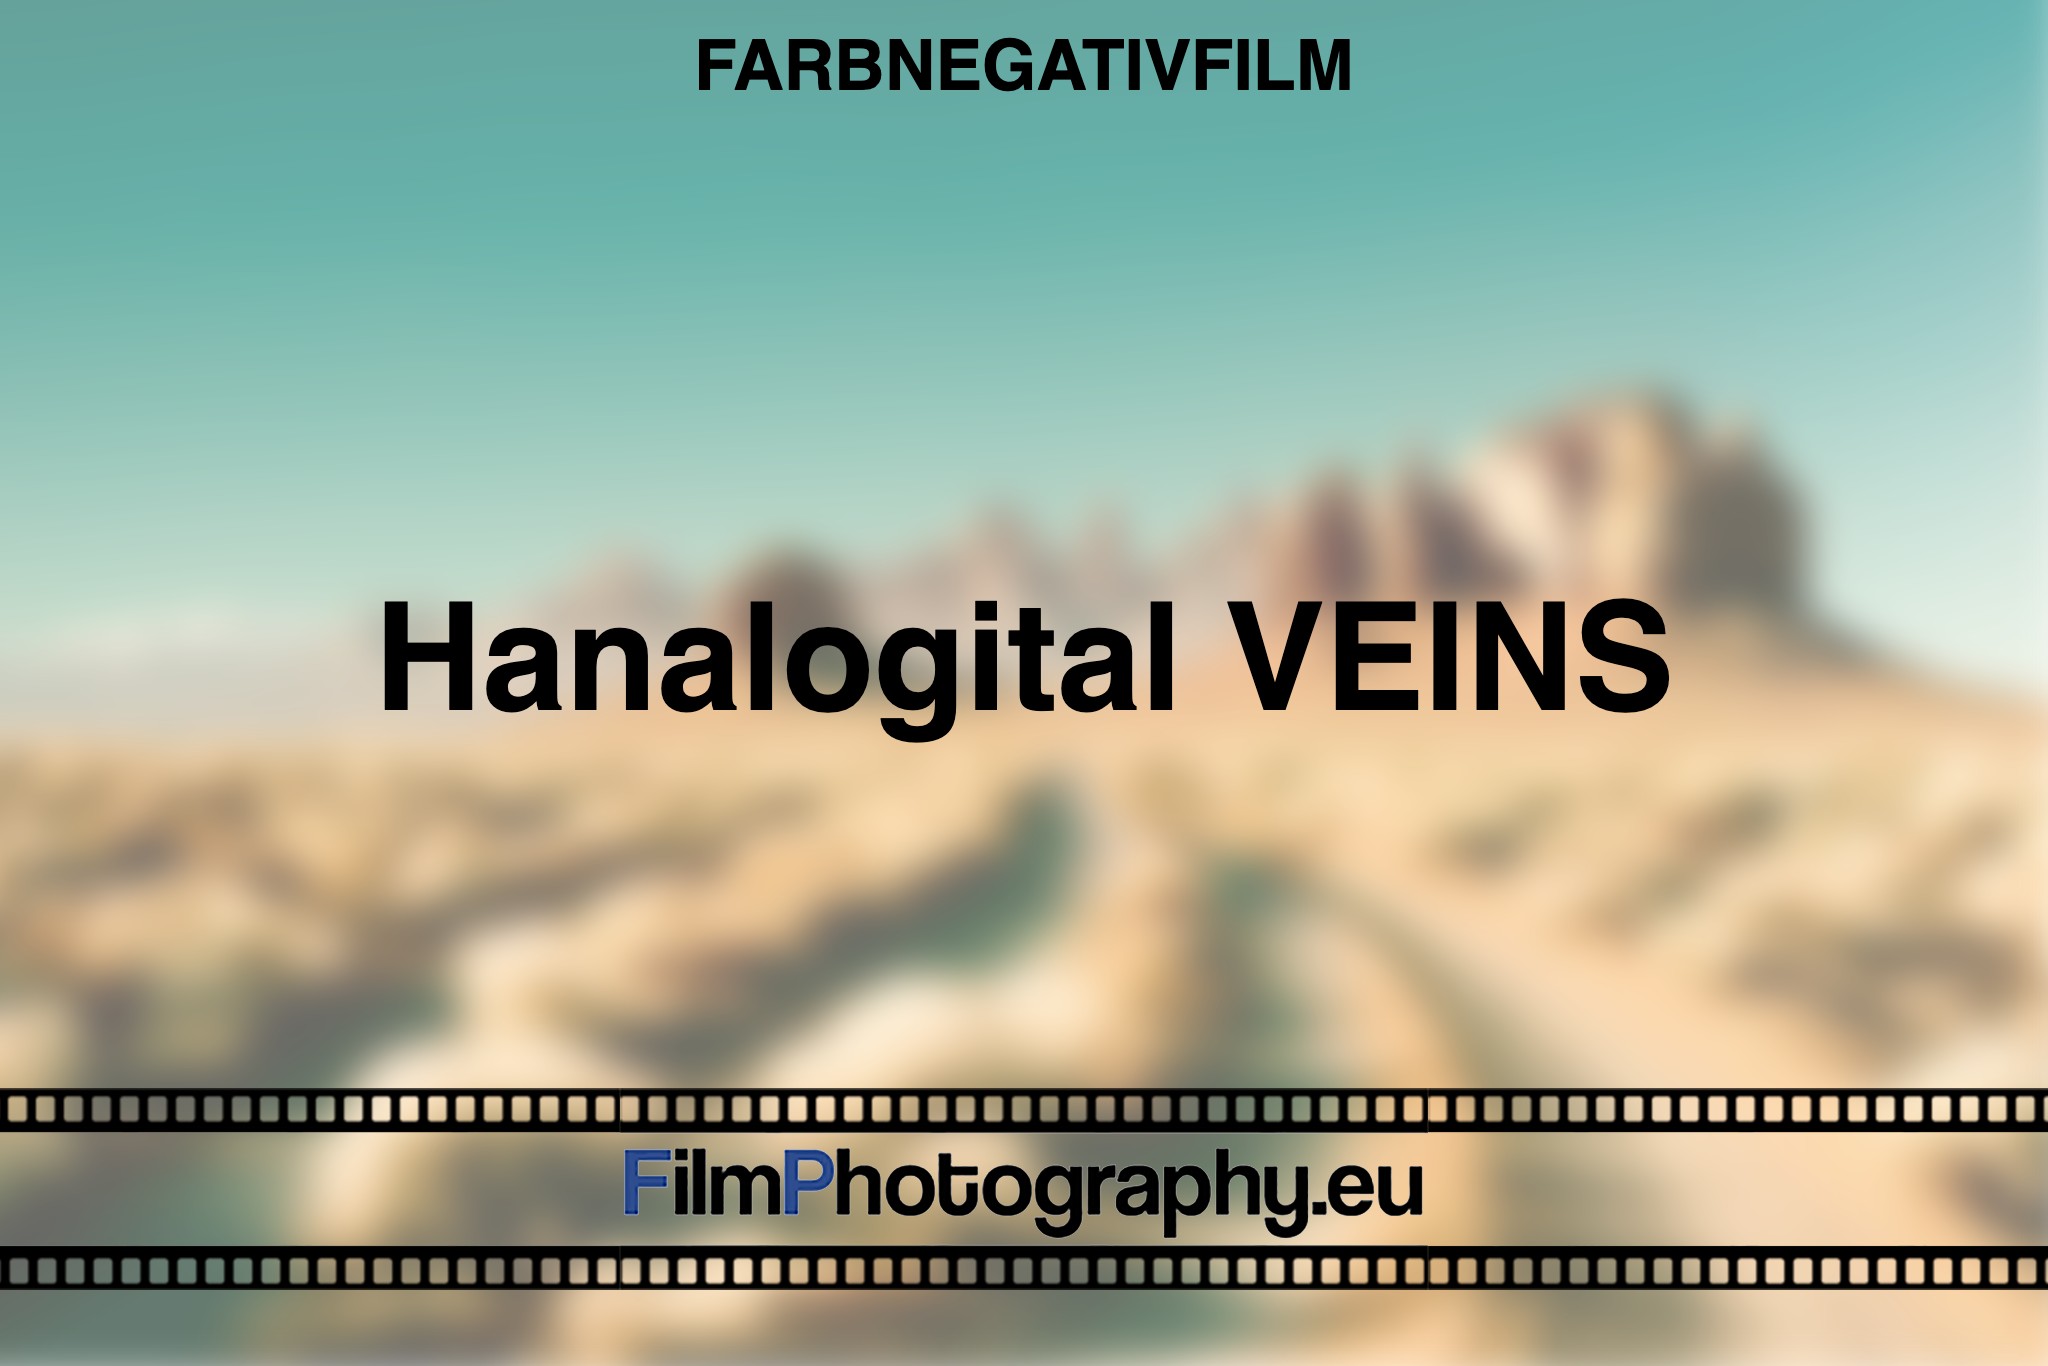 hanalogital-veins-farbnegativfilm-bnv